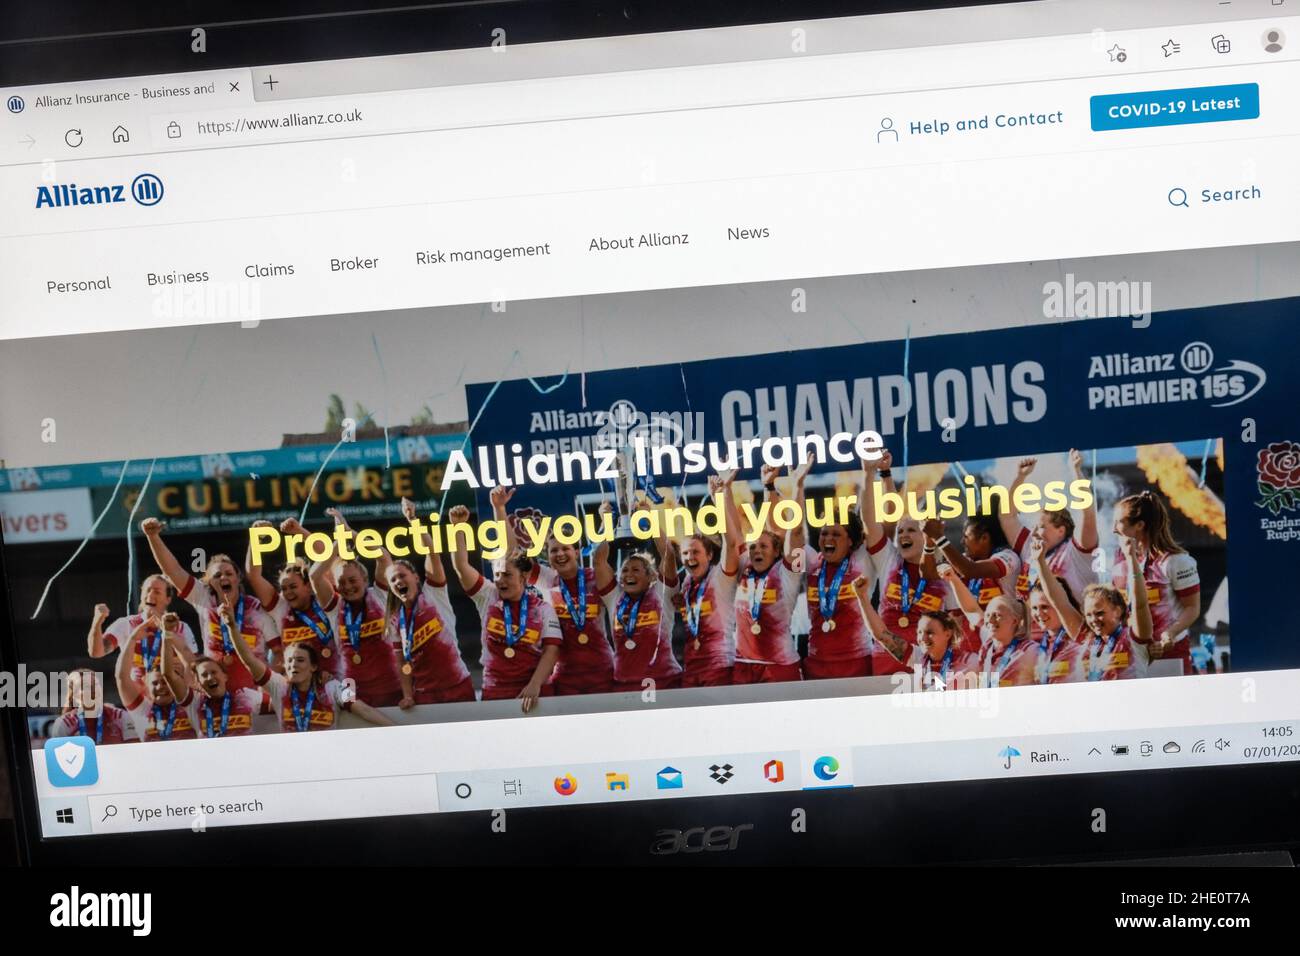 Sito web della compagnia di assicurazioni Allianz su un computer portatile, Regno Unito Foto Stock